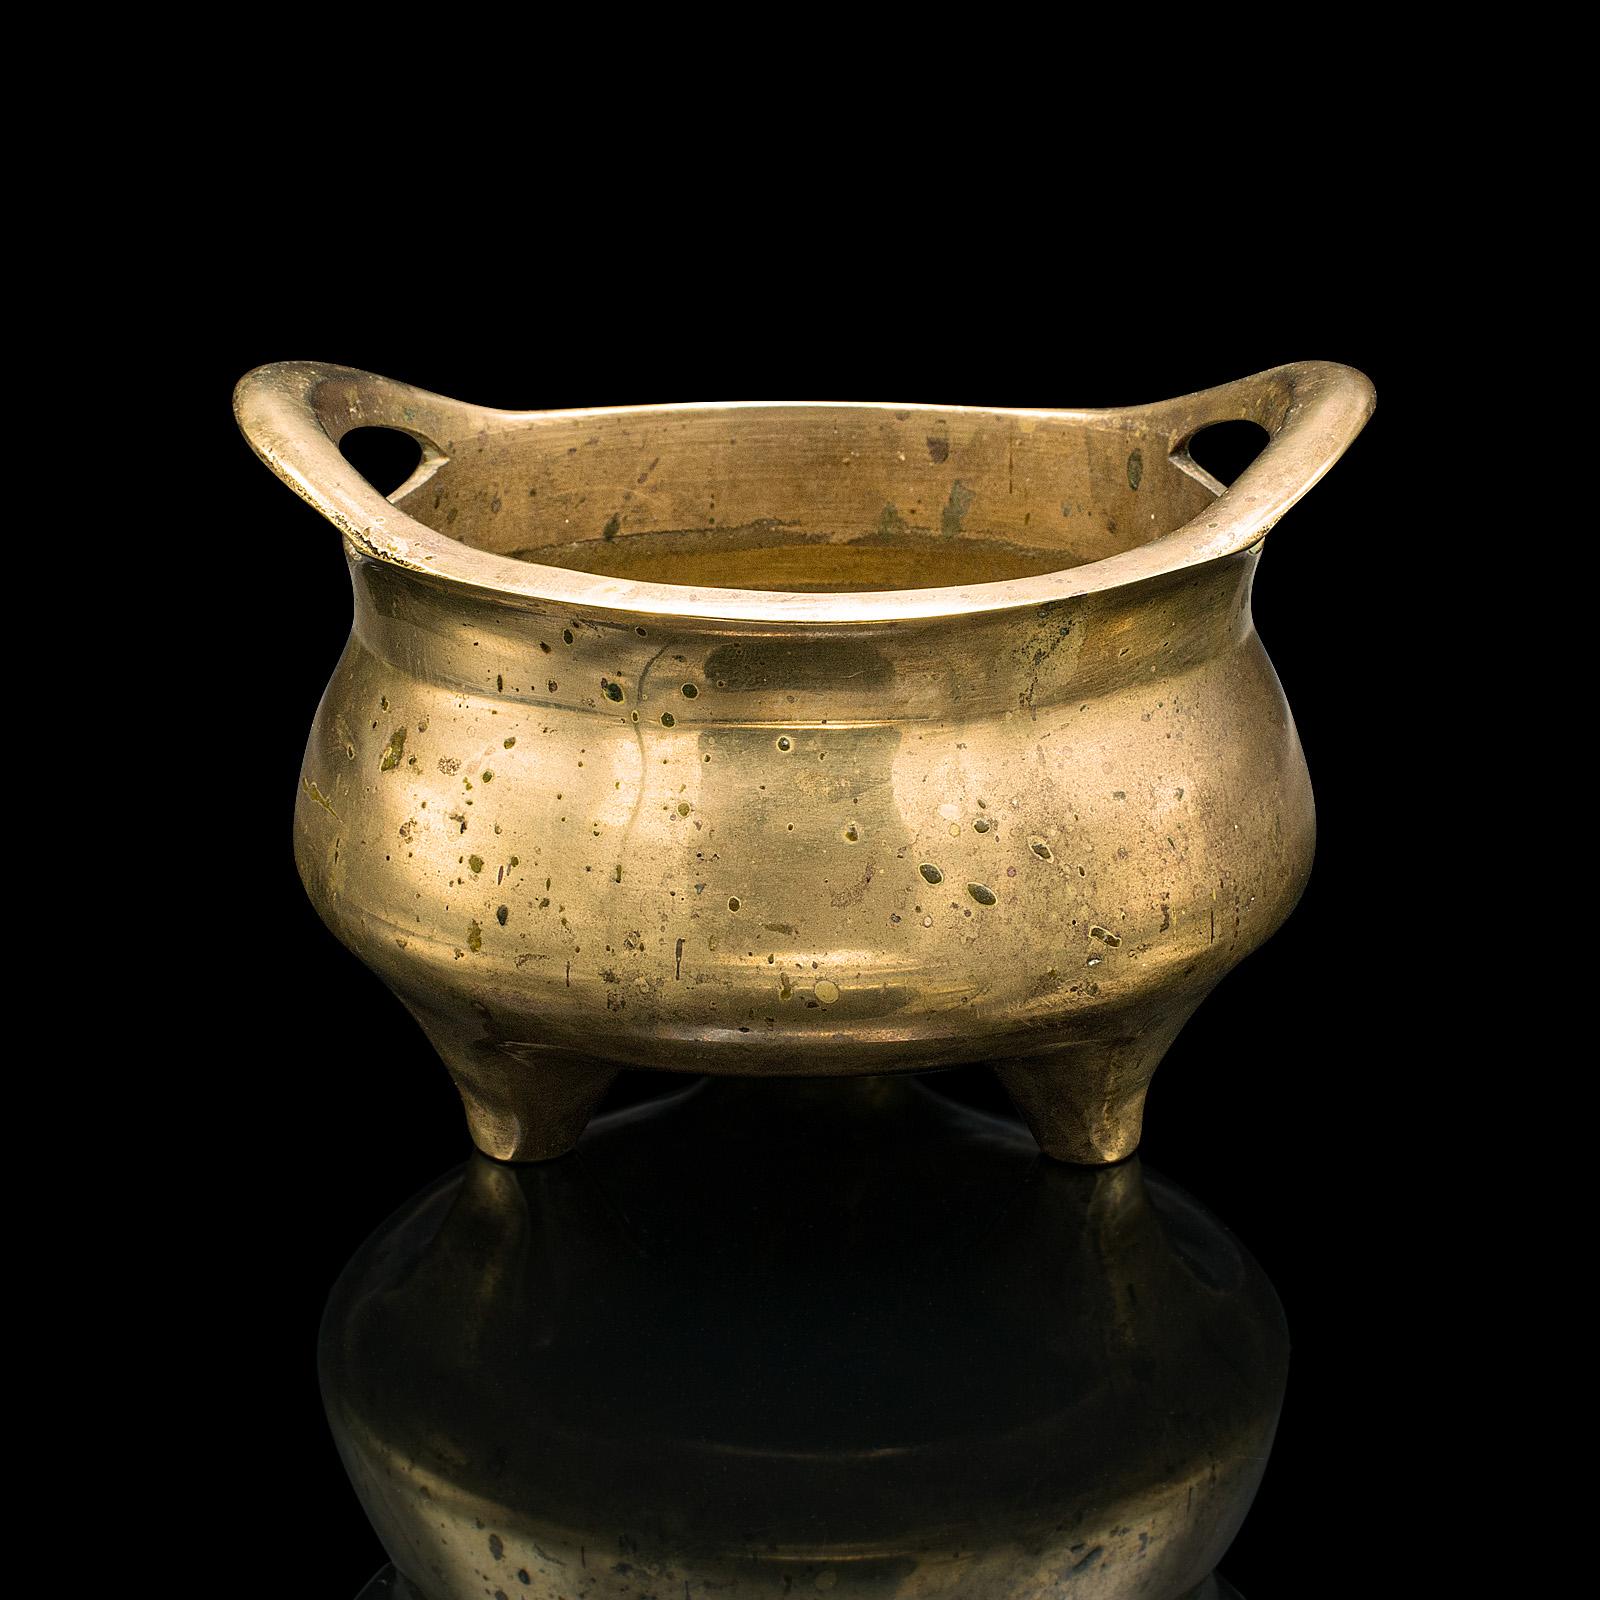 Il s'agit d'un brûleur d'encens ancien. Un encensoir oriental en laiton, datant de la fin de la période victorienne, vers 1900.

Des tons dorés attrayants et une forme tactile
Il présente un aspect désirable, légèrement usé par le temps.
Les cuivres